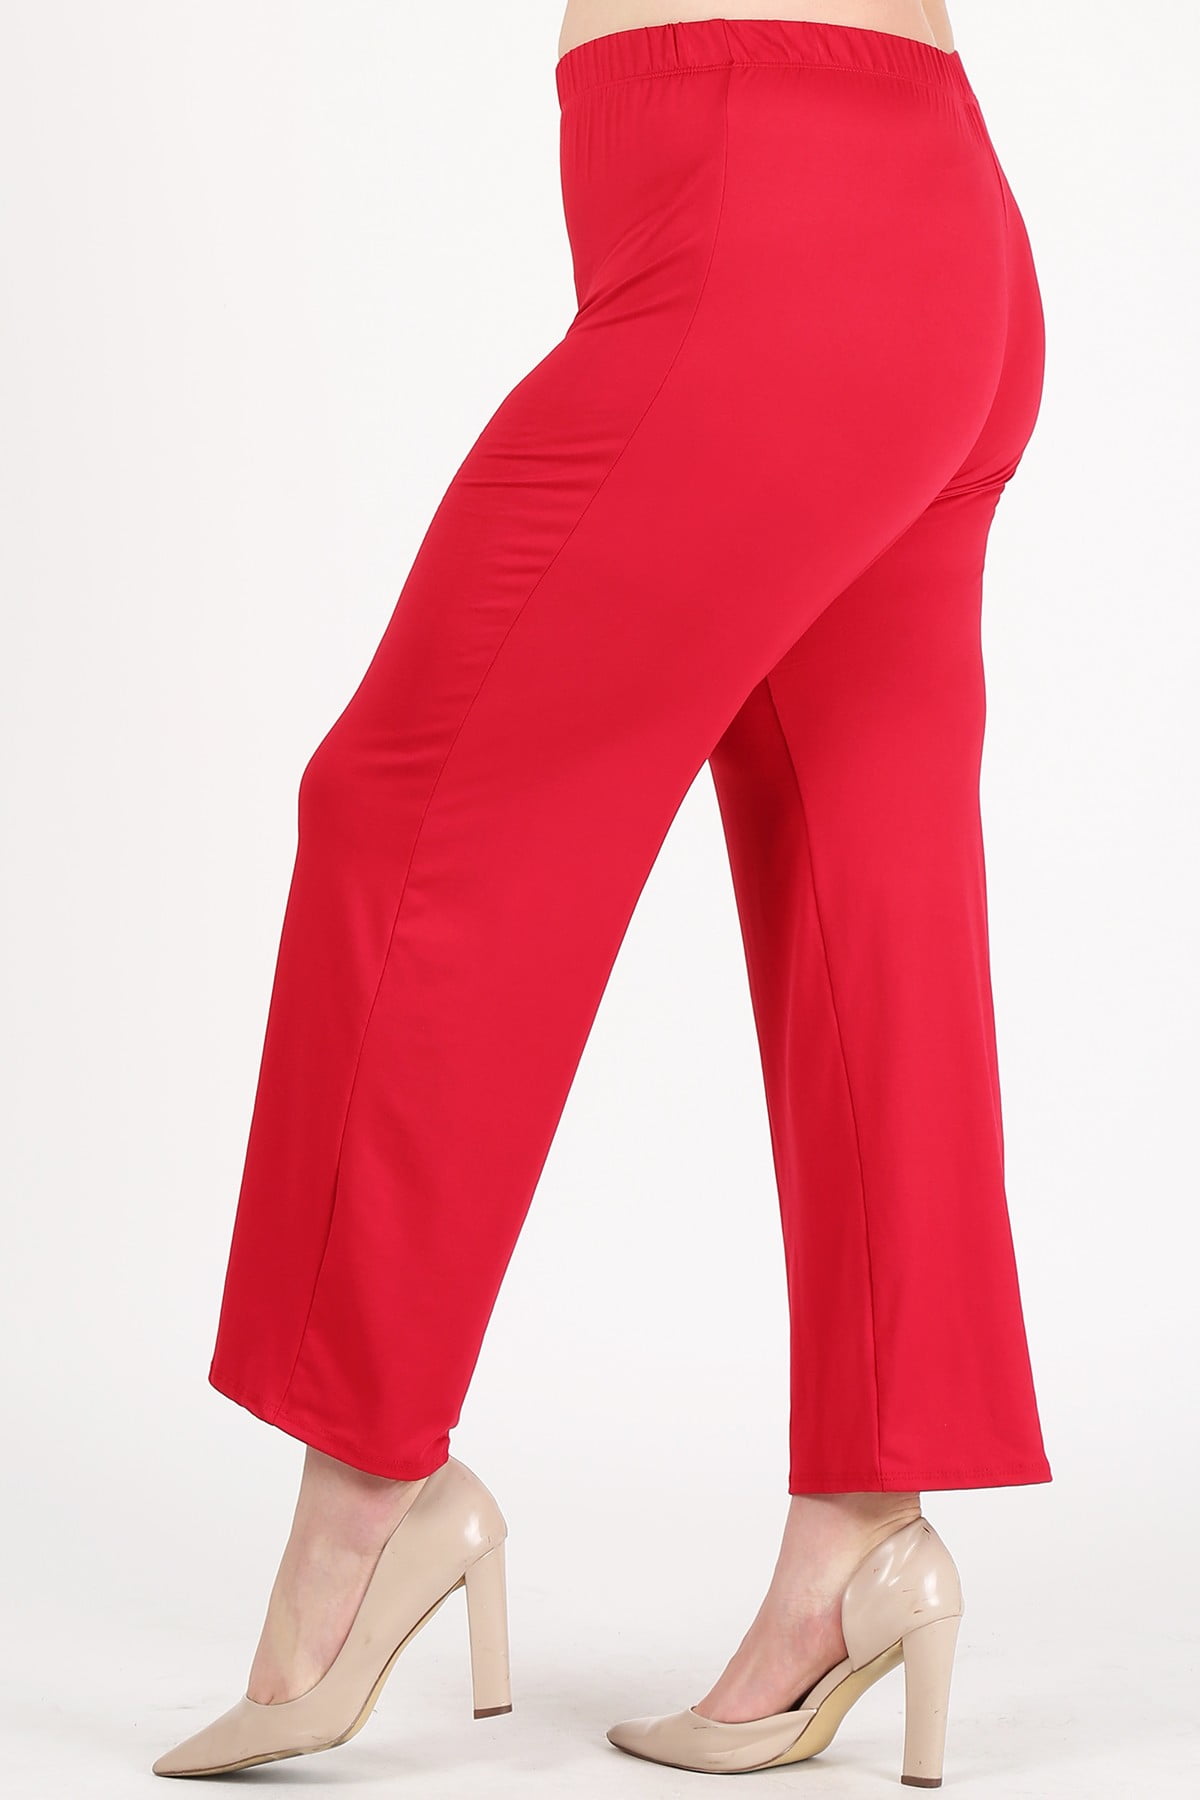 Plus size women high-waist relaxed pants - Walmart.com